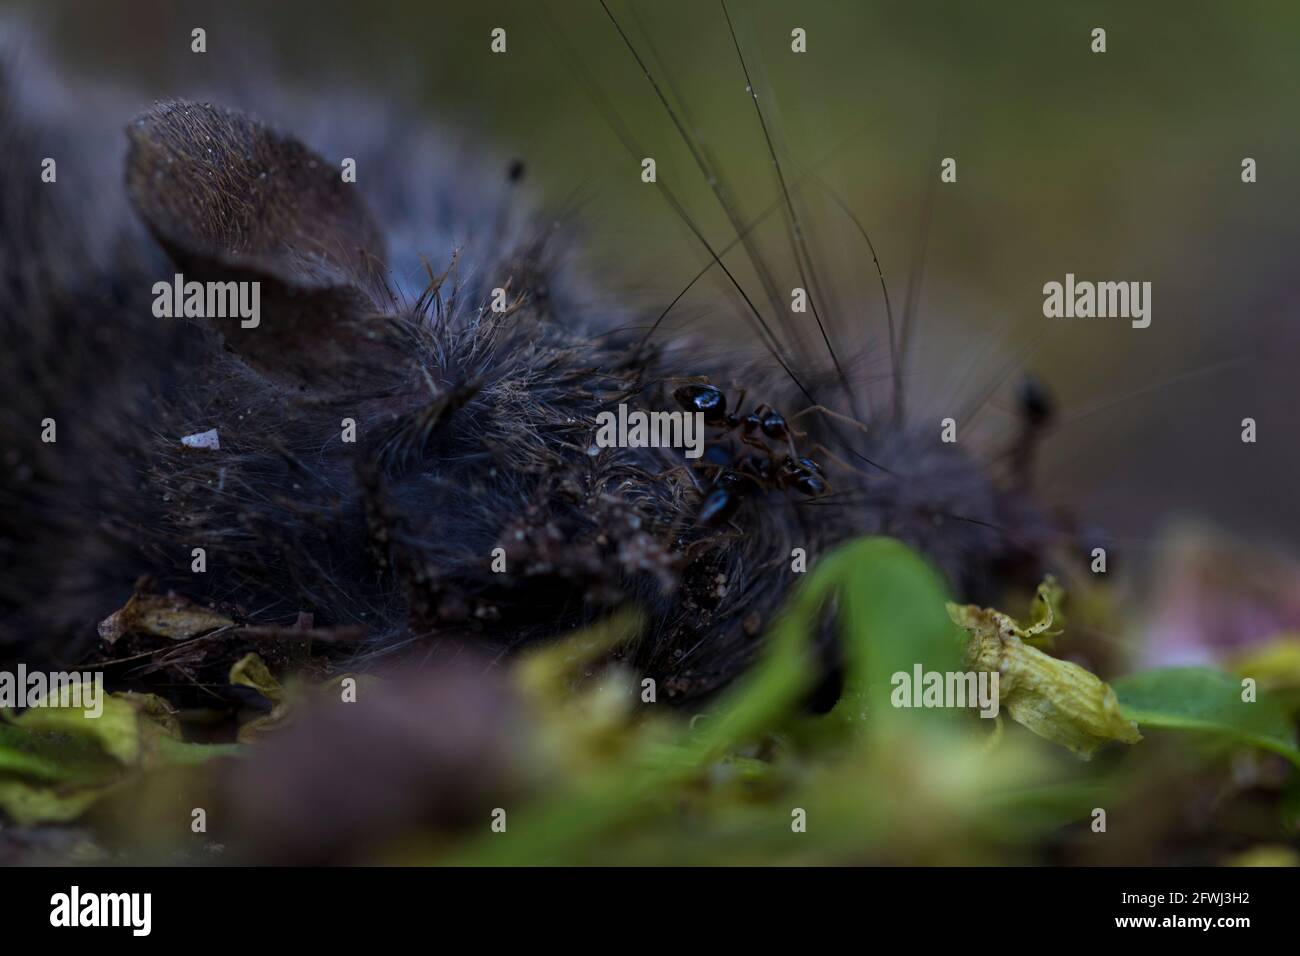 Ameisen legen Eier auf tote Maus aus der Nähe. Ameisenkolonie, die an toten Tieren isst und sich reproduziert. Stockfoto